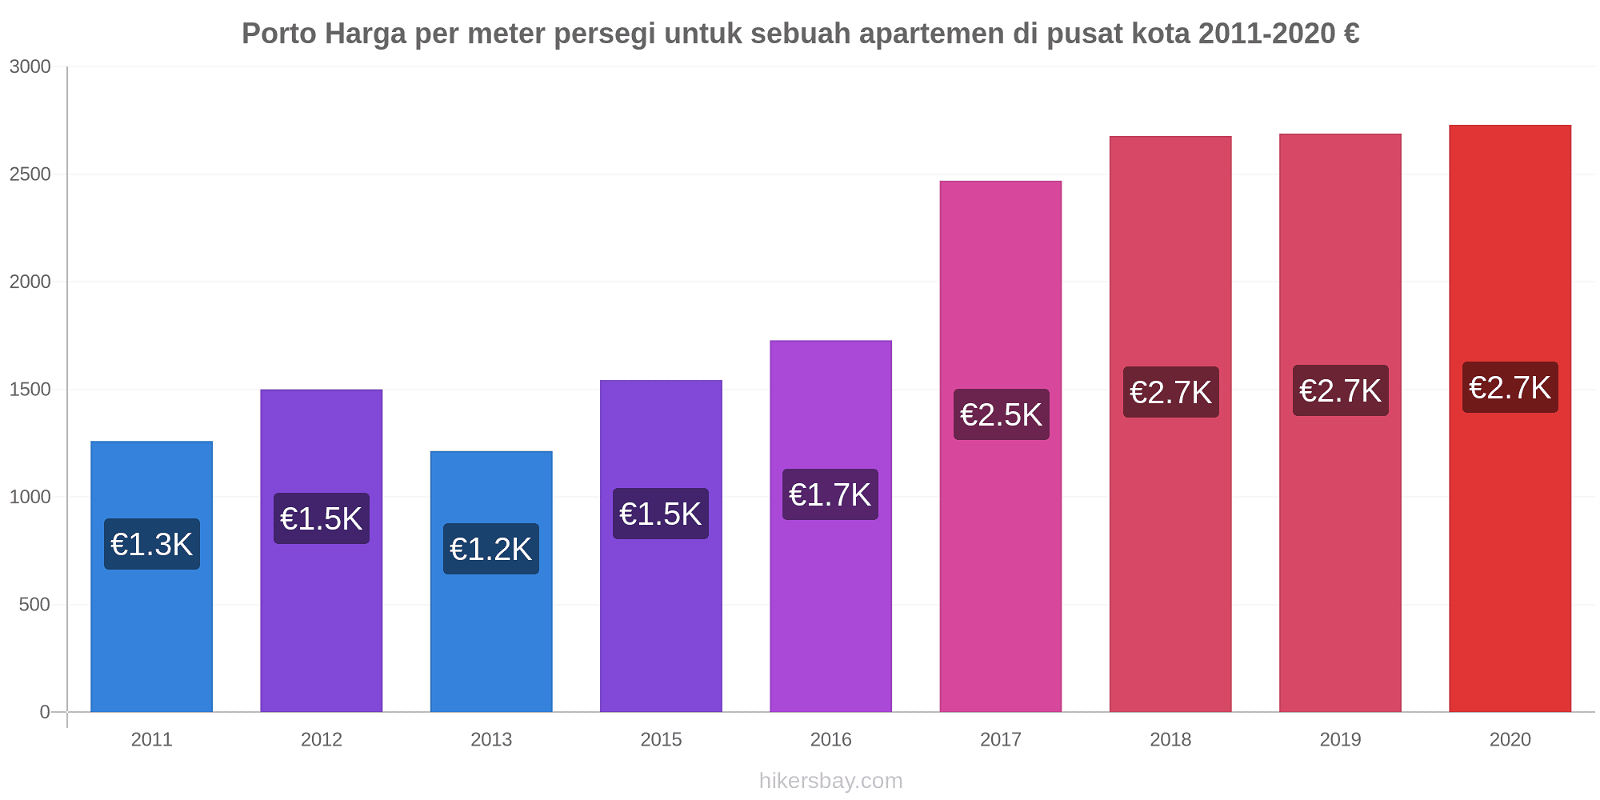 Porto perubahan harga Harga per meter persegi untuk sebuah apartemen di pusat kota hikersbay.com